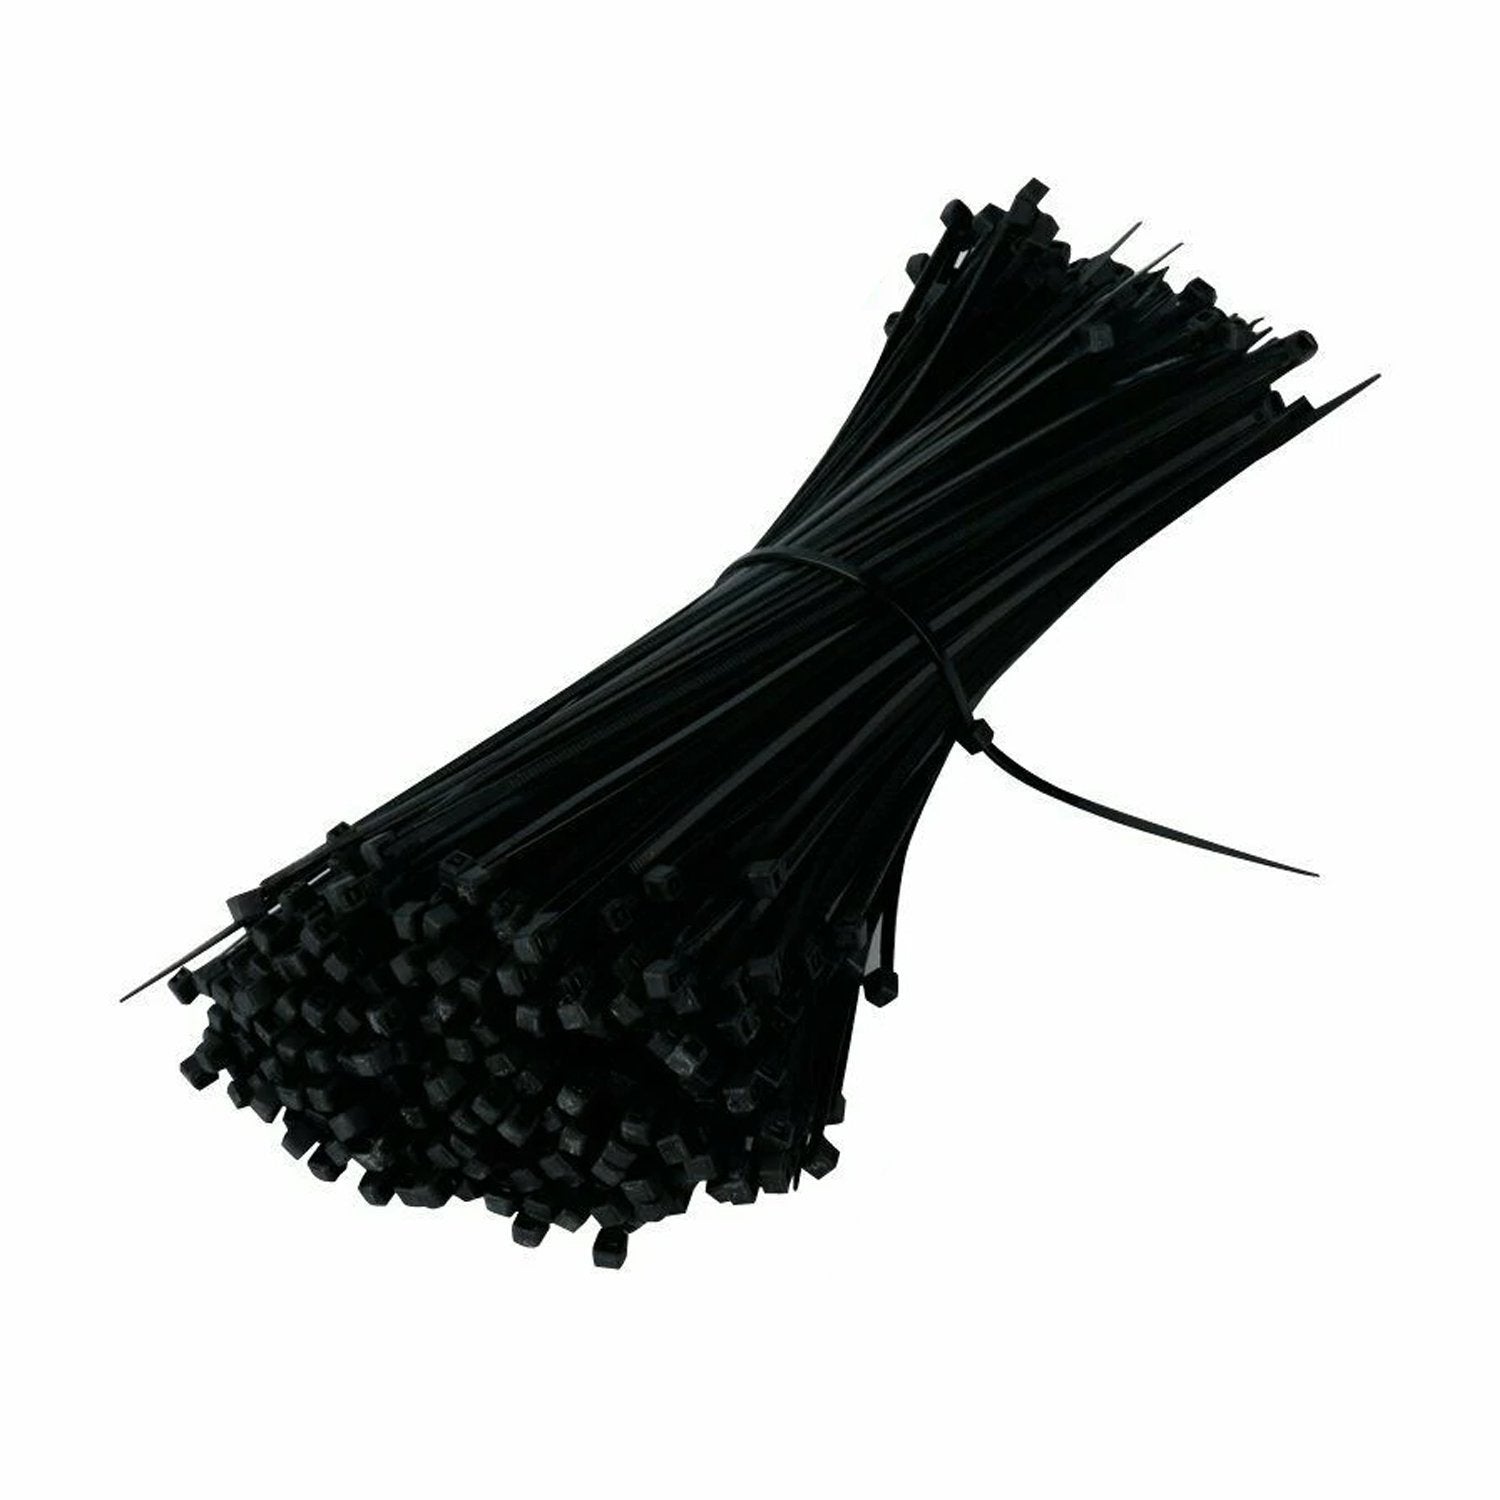 Black Nylon Cable Zip Ties - 100 pcs